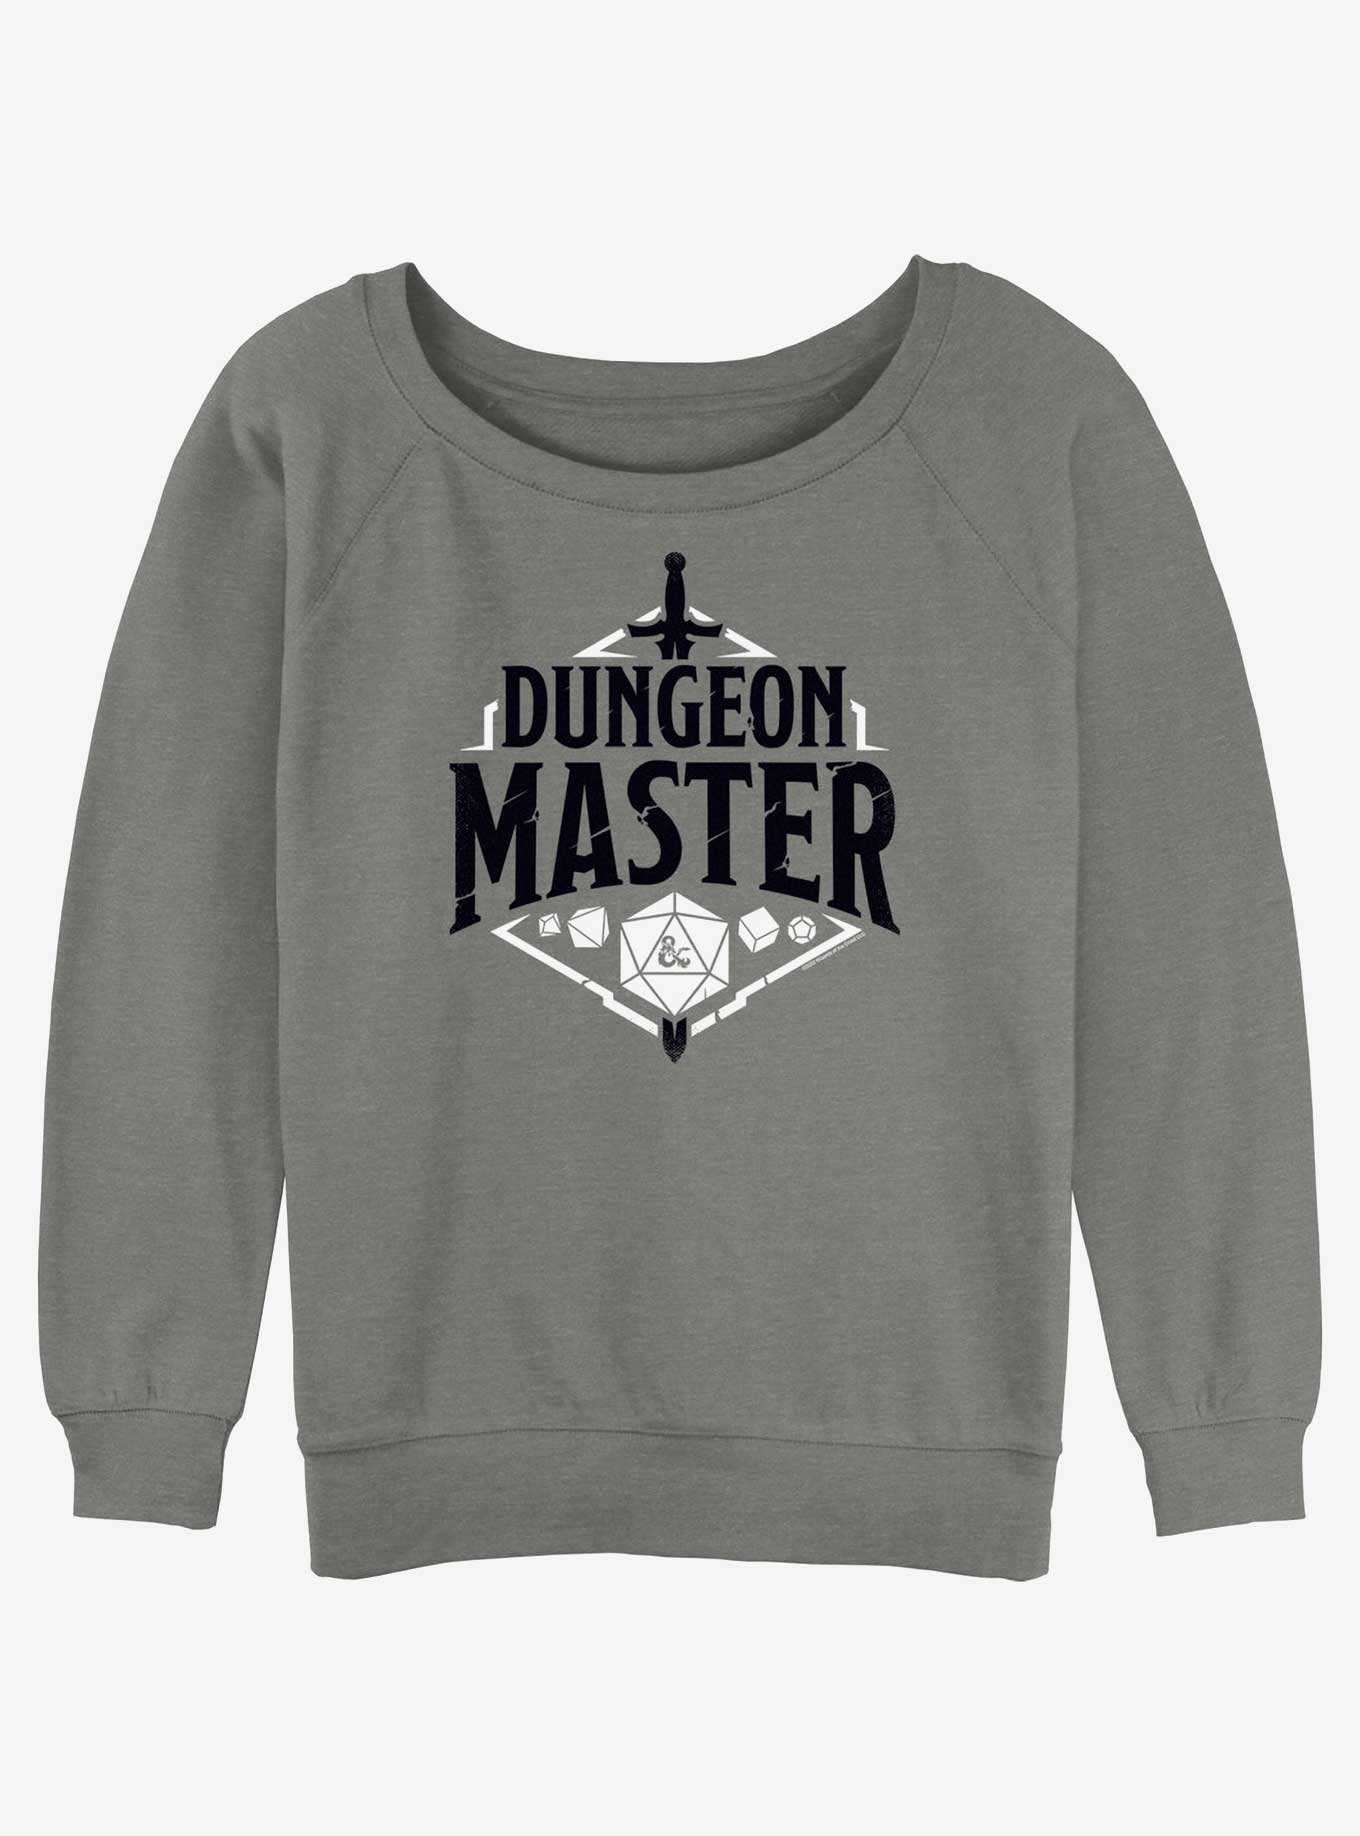 Dungeons & Dragons Dungeon Master Emblem Girls Slouchy Sweatshirt, , hi-res